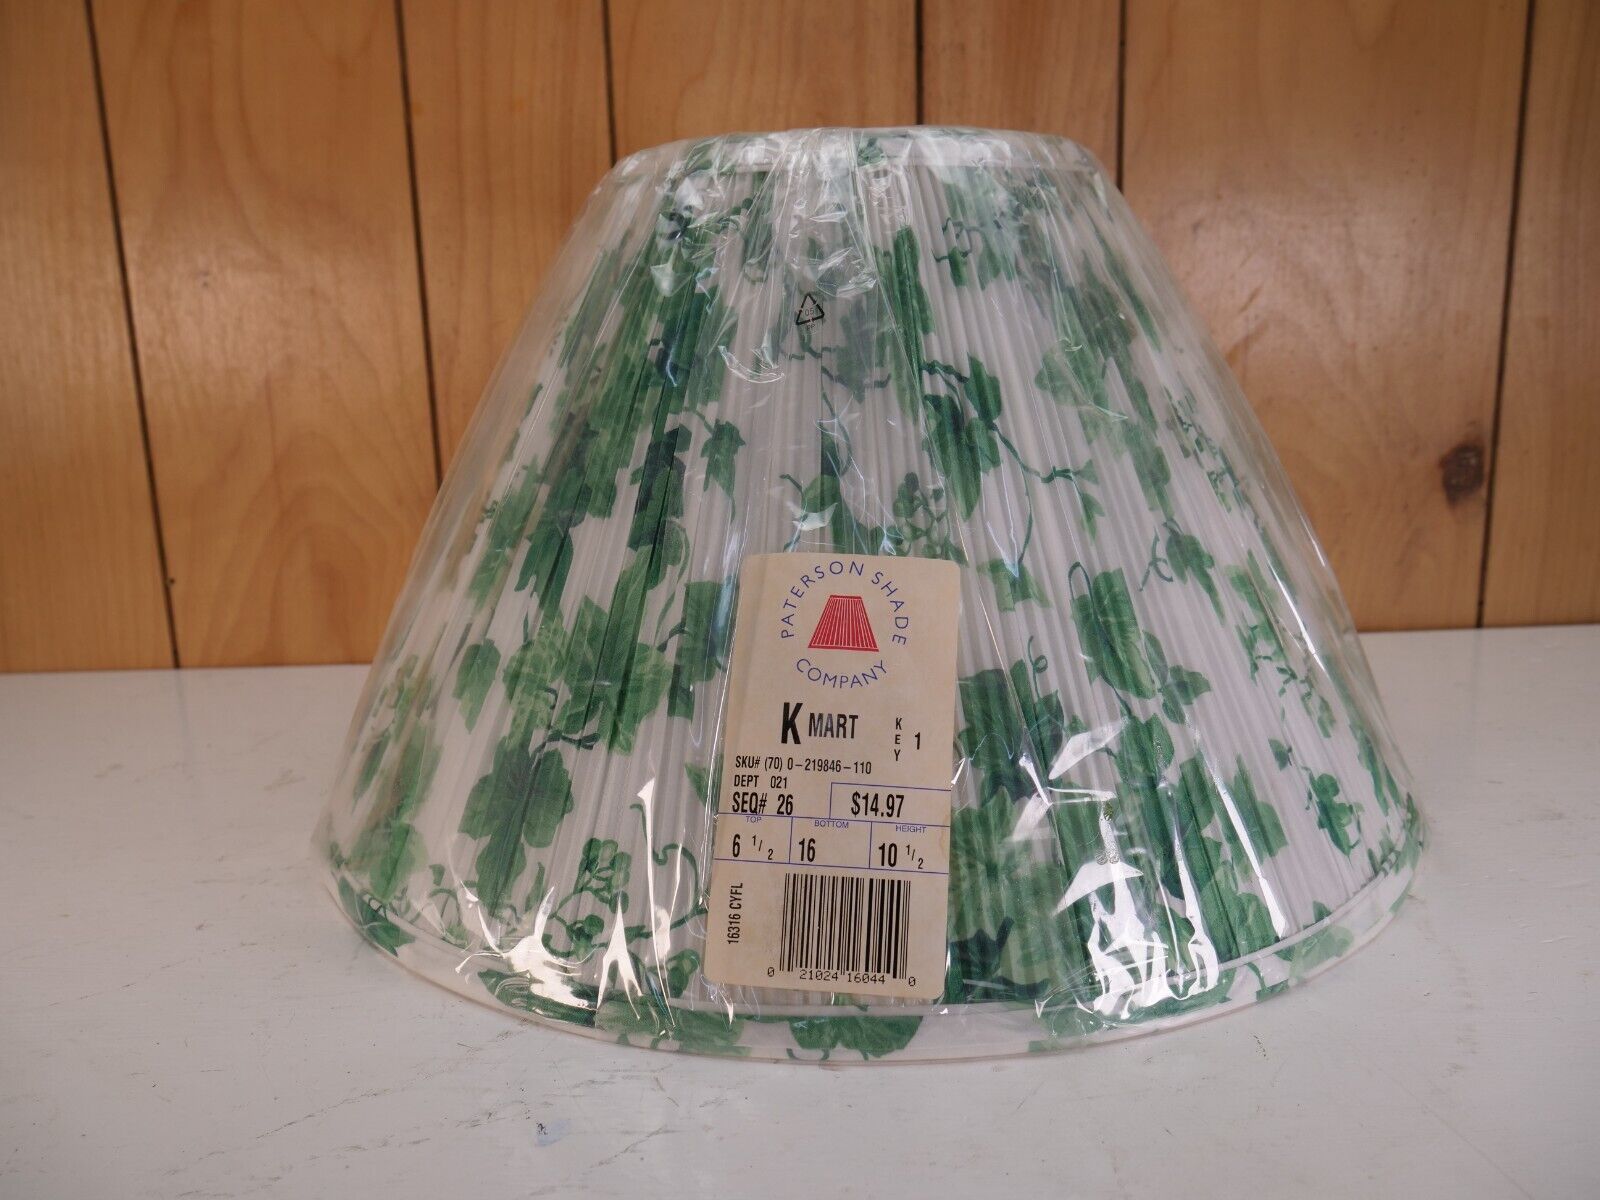 Vintage Boho Lamp Shade Green Ivy Patterson Shade Company NOS Kmart 6 1/2 16 10